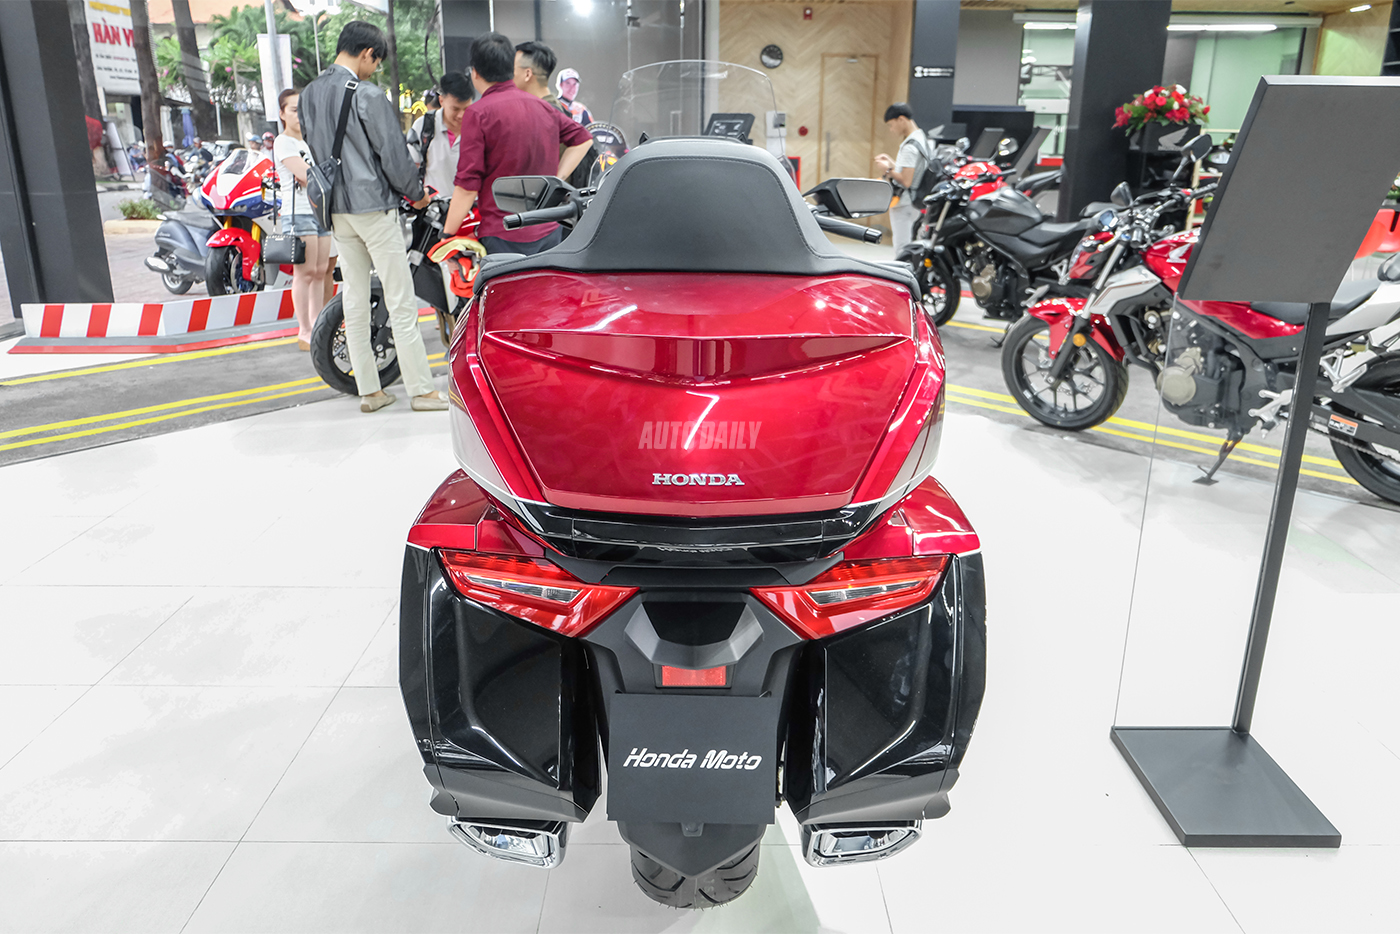 Giá xe Honda Goldwing 2023  Đánh giá Thông số kỹ thuật Hình ảnh Tin tức   Autofun